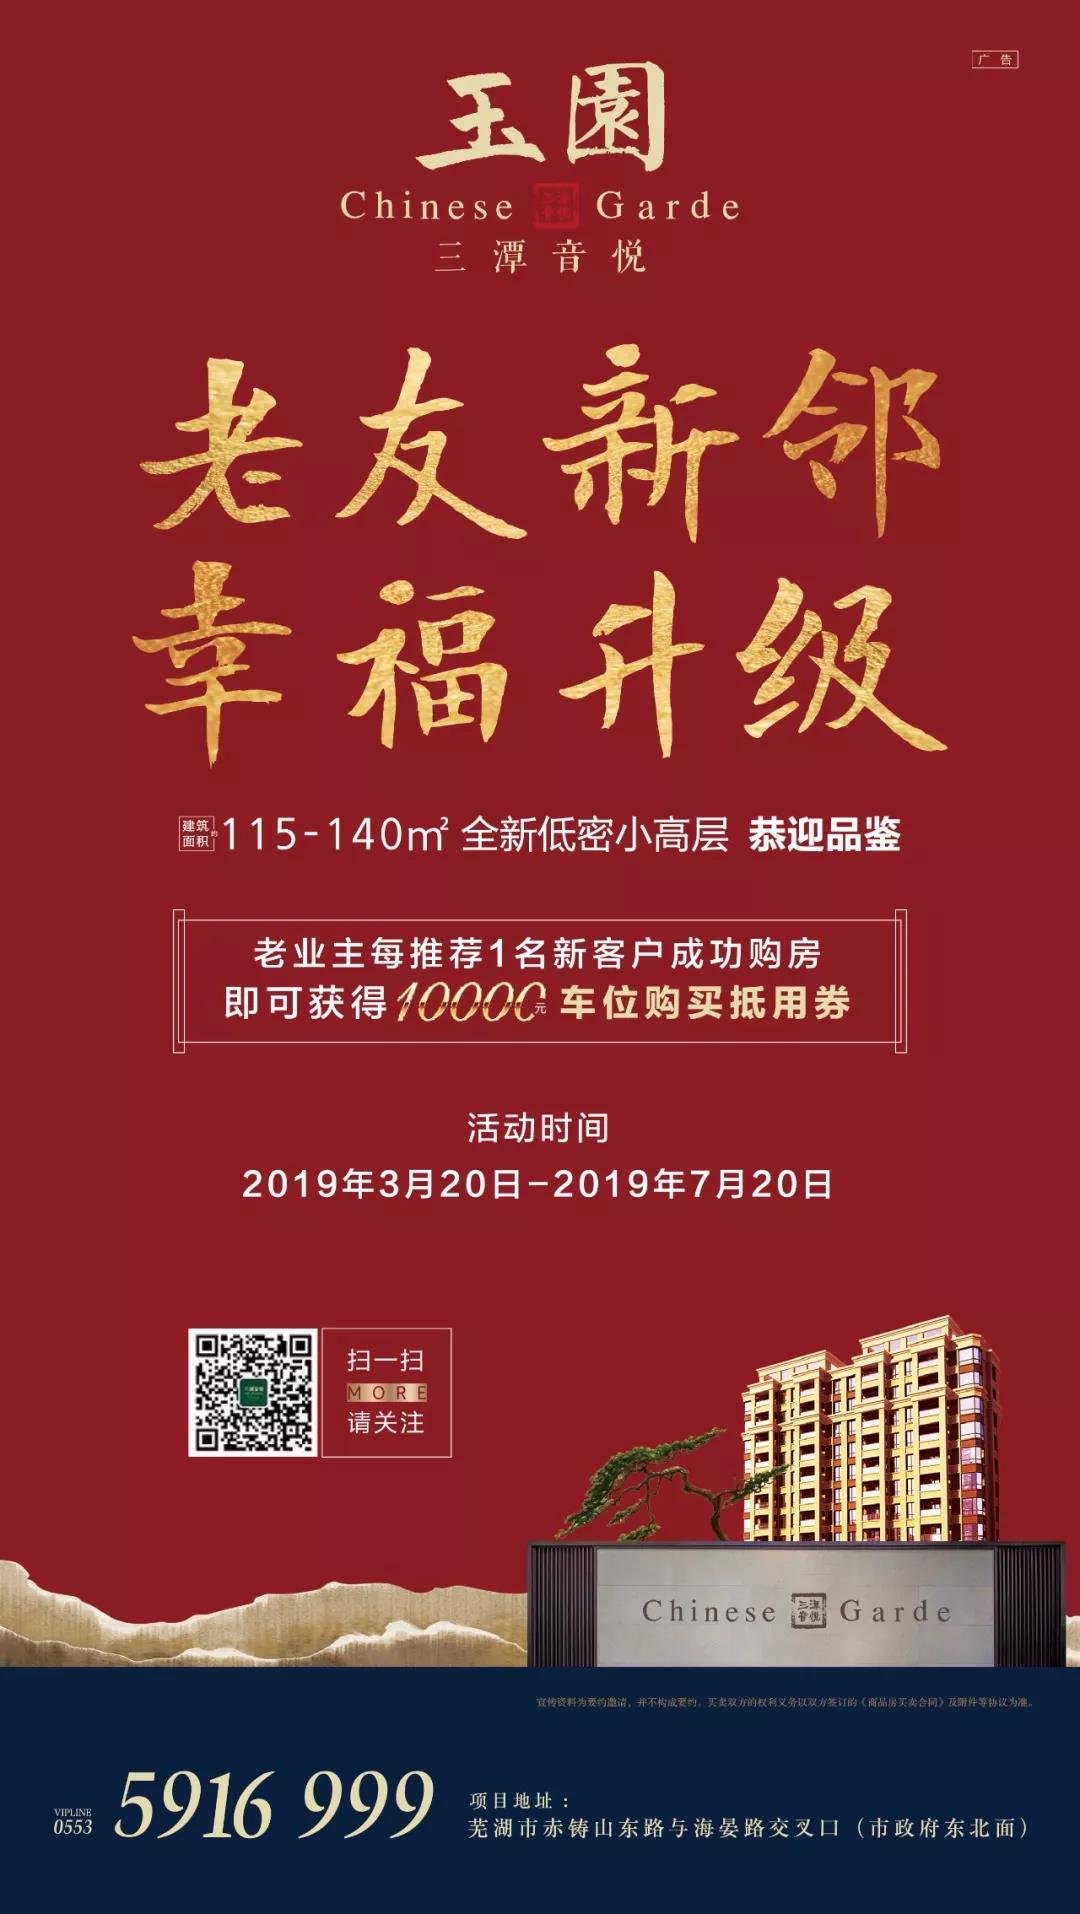 三潭音悦小学正式划分到芜湖市小学 今年9月开学